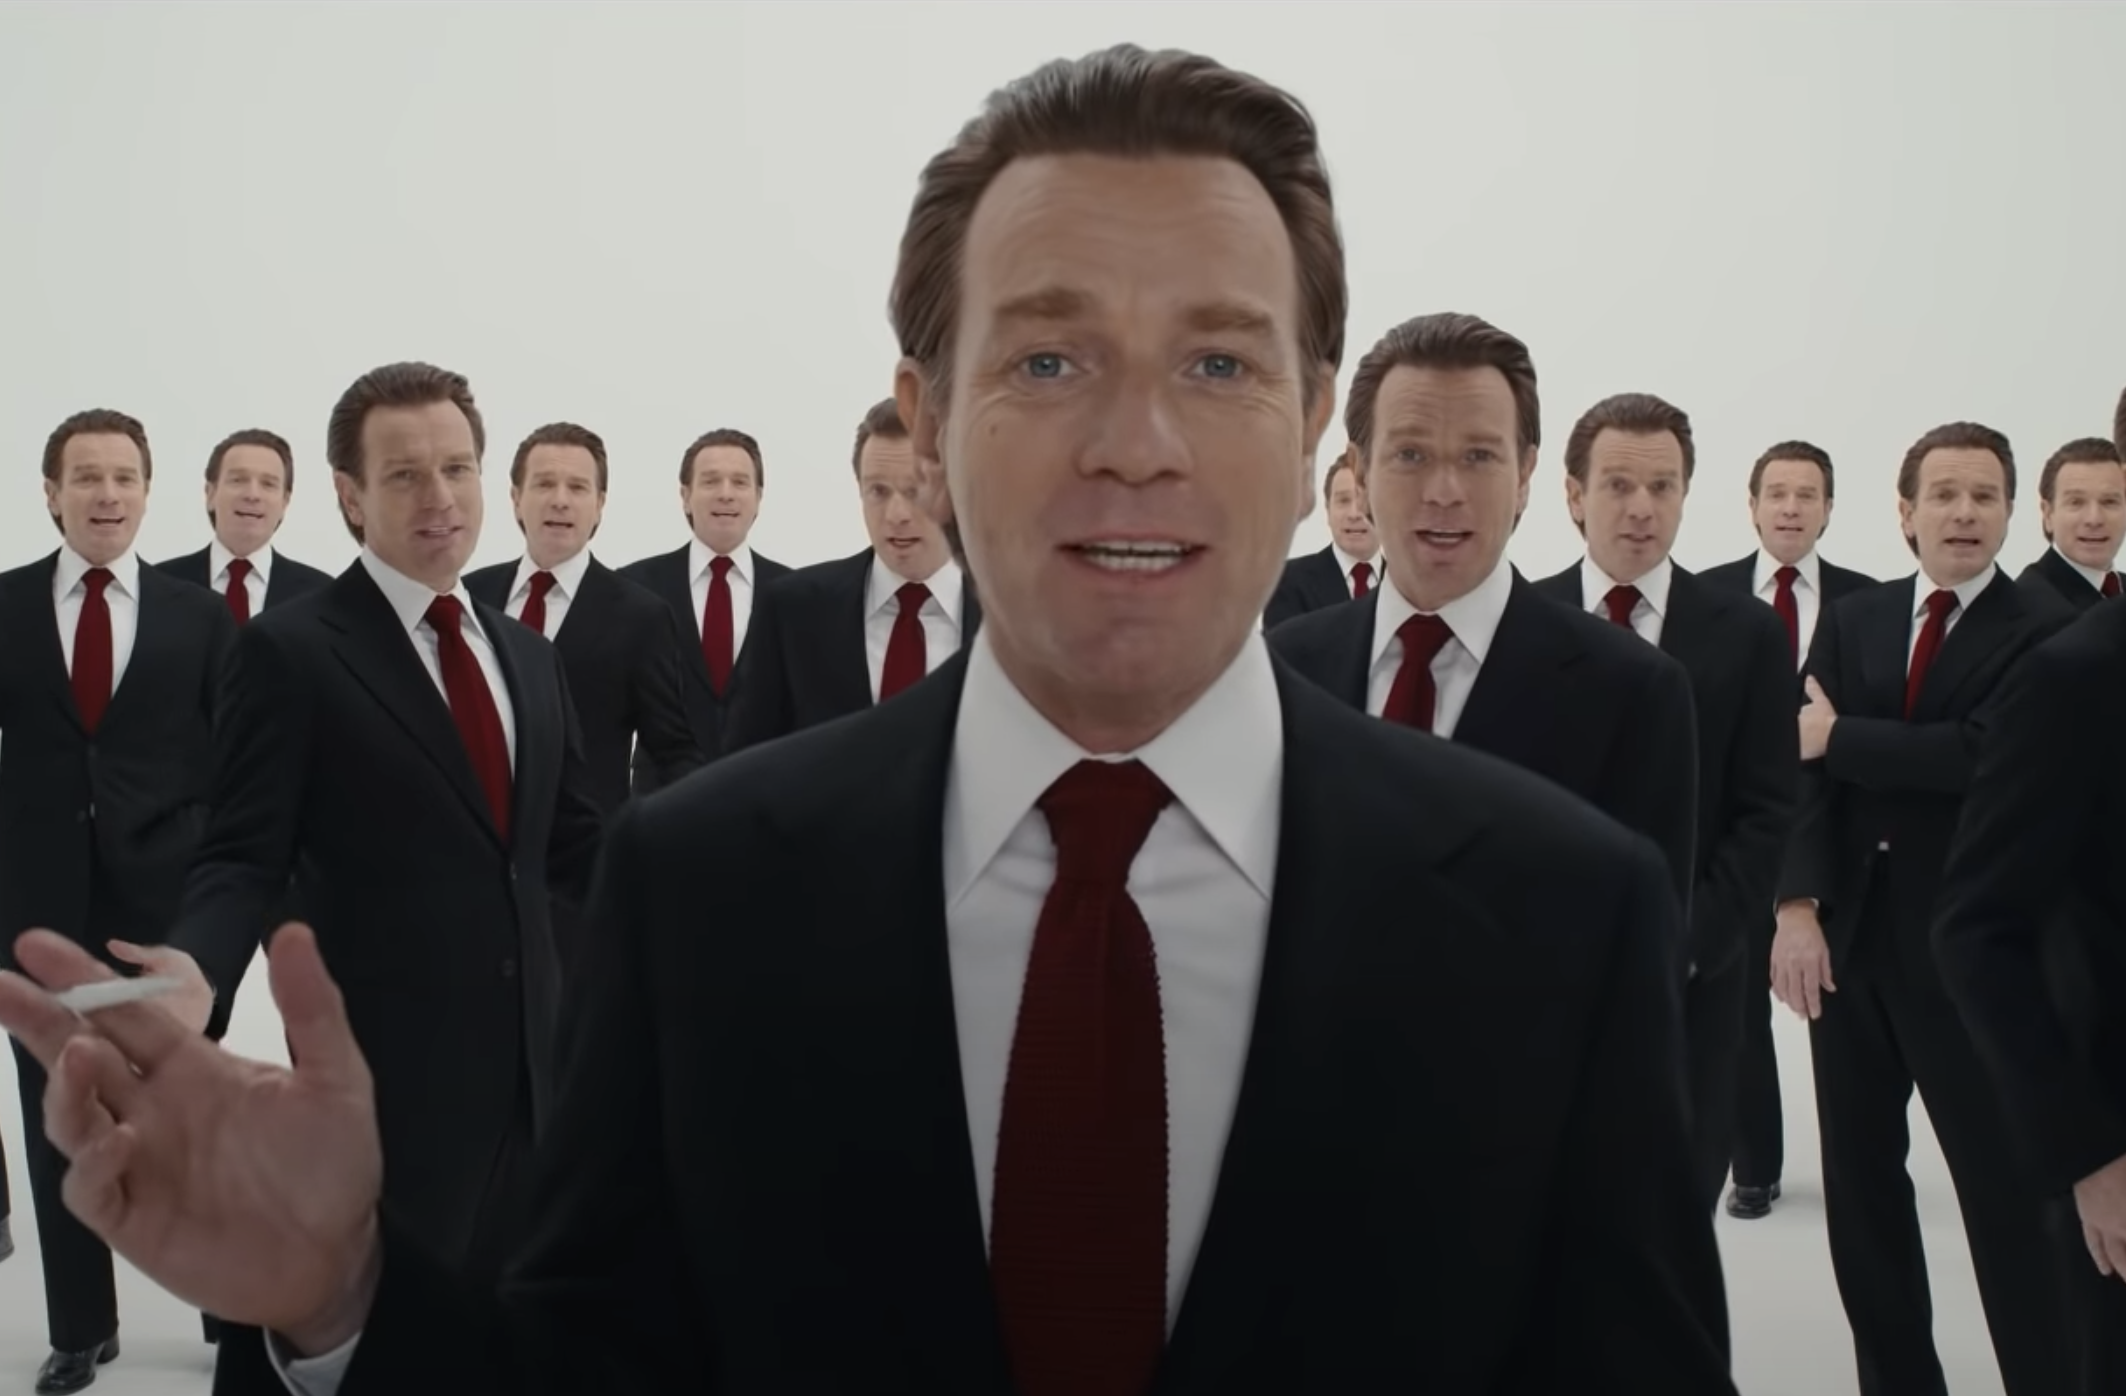 Cena da série Halston. Ewan McGregor, um homem branco, ruivo, de paletó e gravata vermelha está posicionado no centro, da cintura para cima. Atrás, também podemos ver várias reproduções de Ewan, todos usando a mesma roupa.